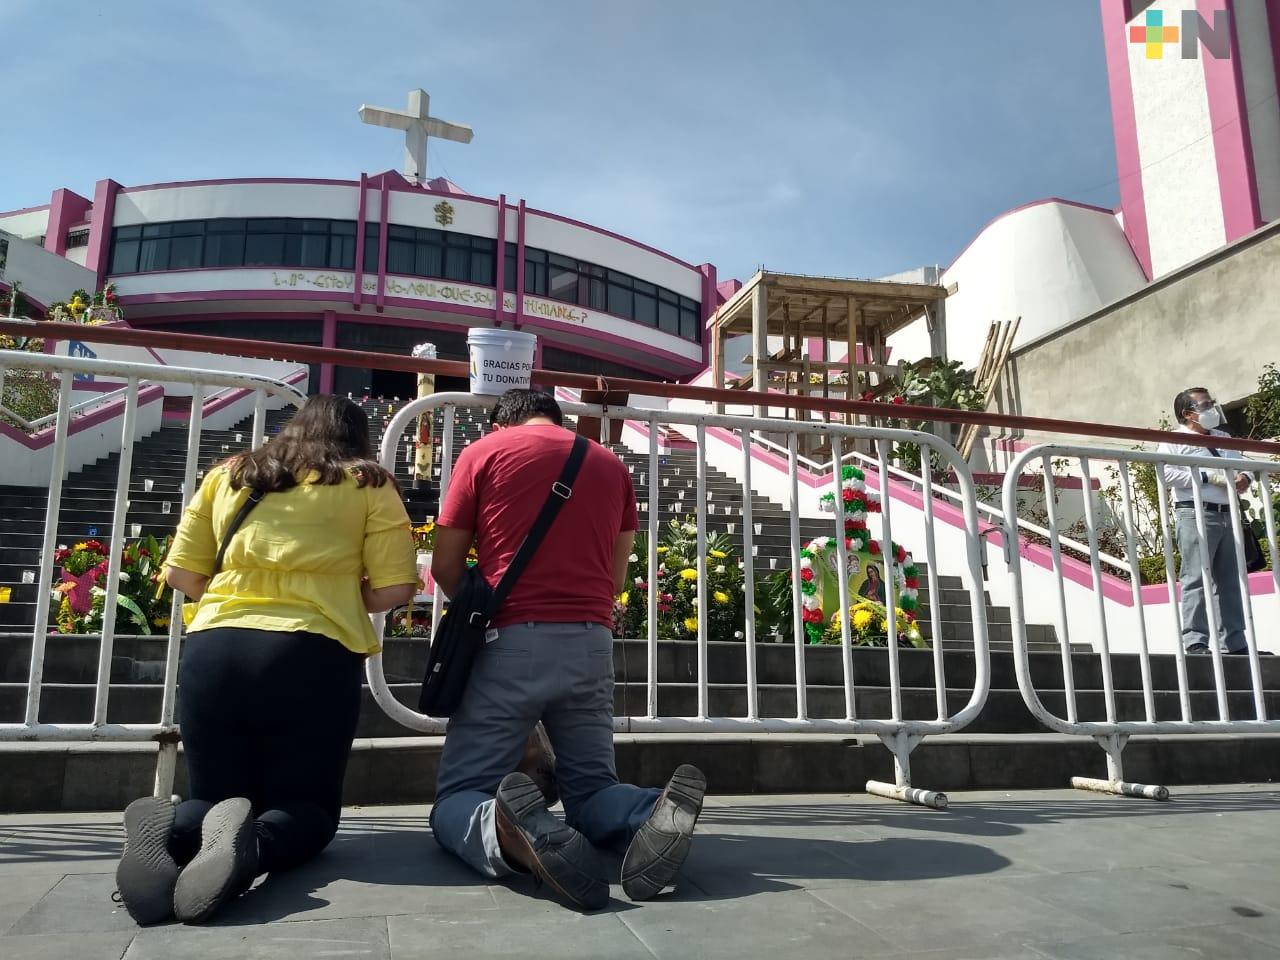 Habrá menos vendedores en inmediaciones del Santuario de El Dique en Xalapa